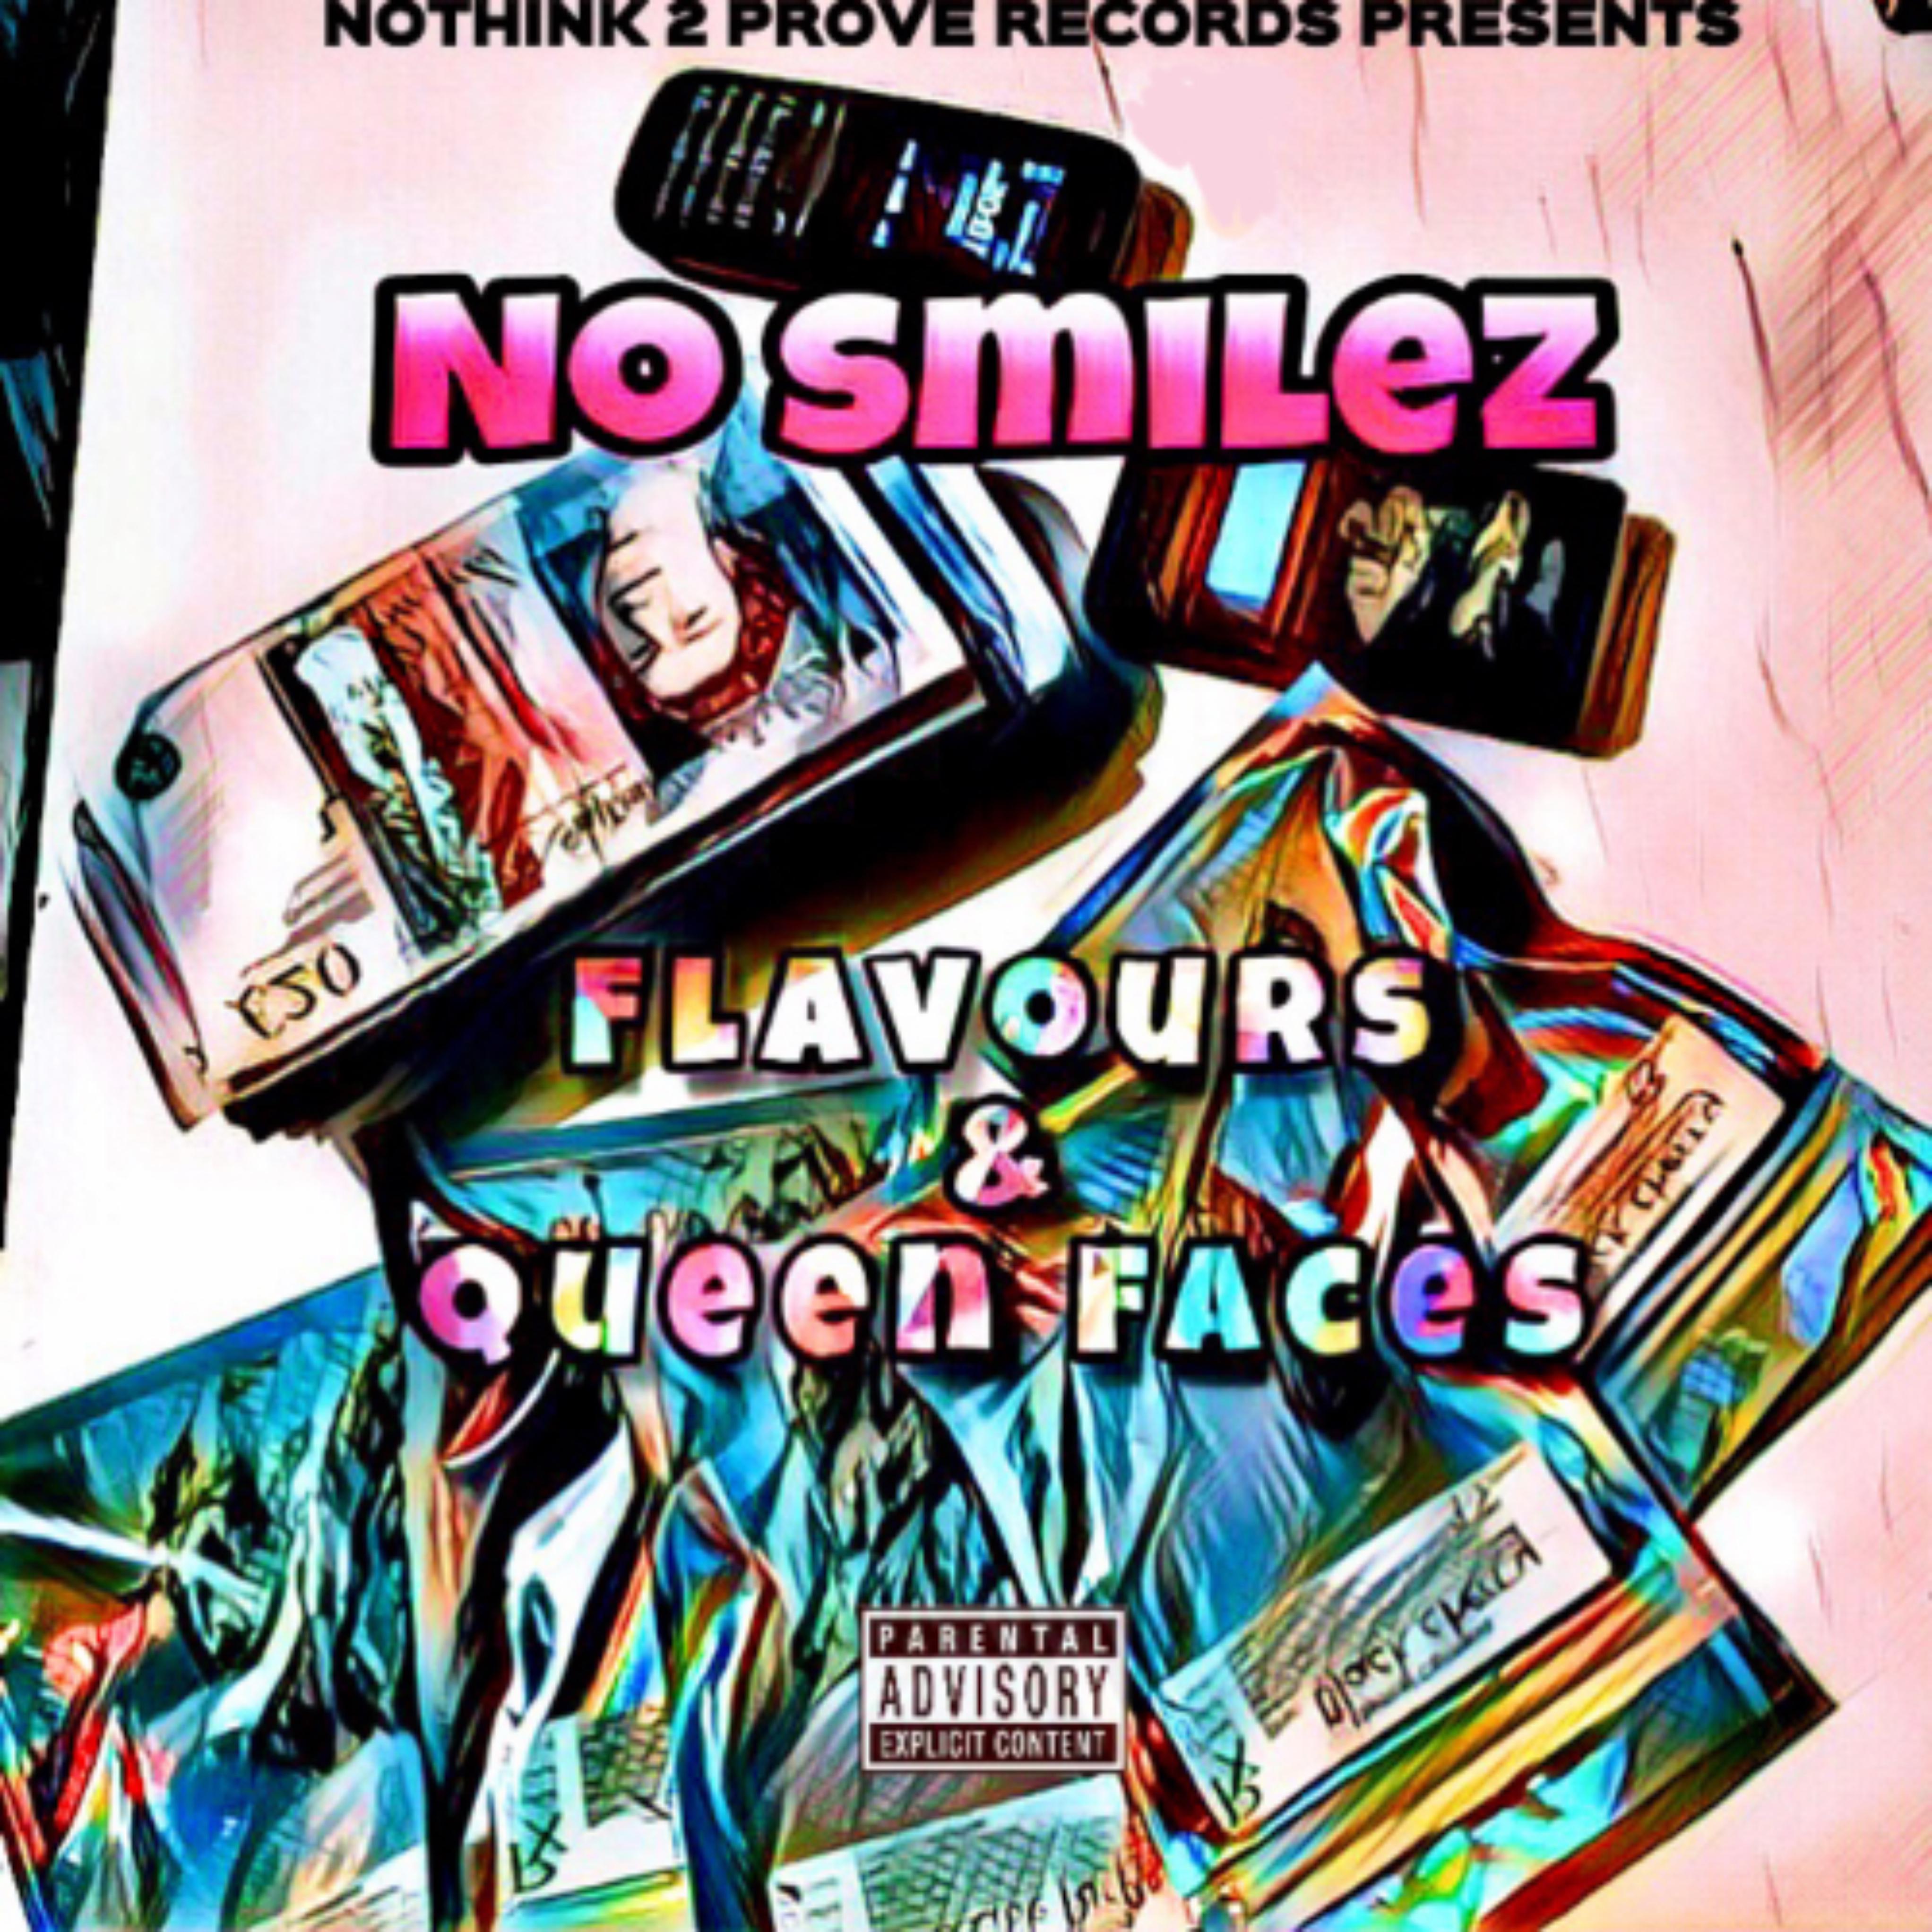 No Smilez - Never Fell Off